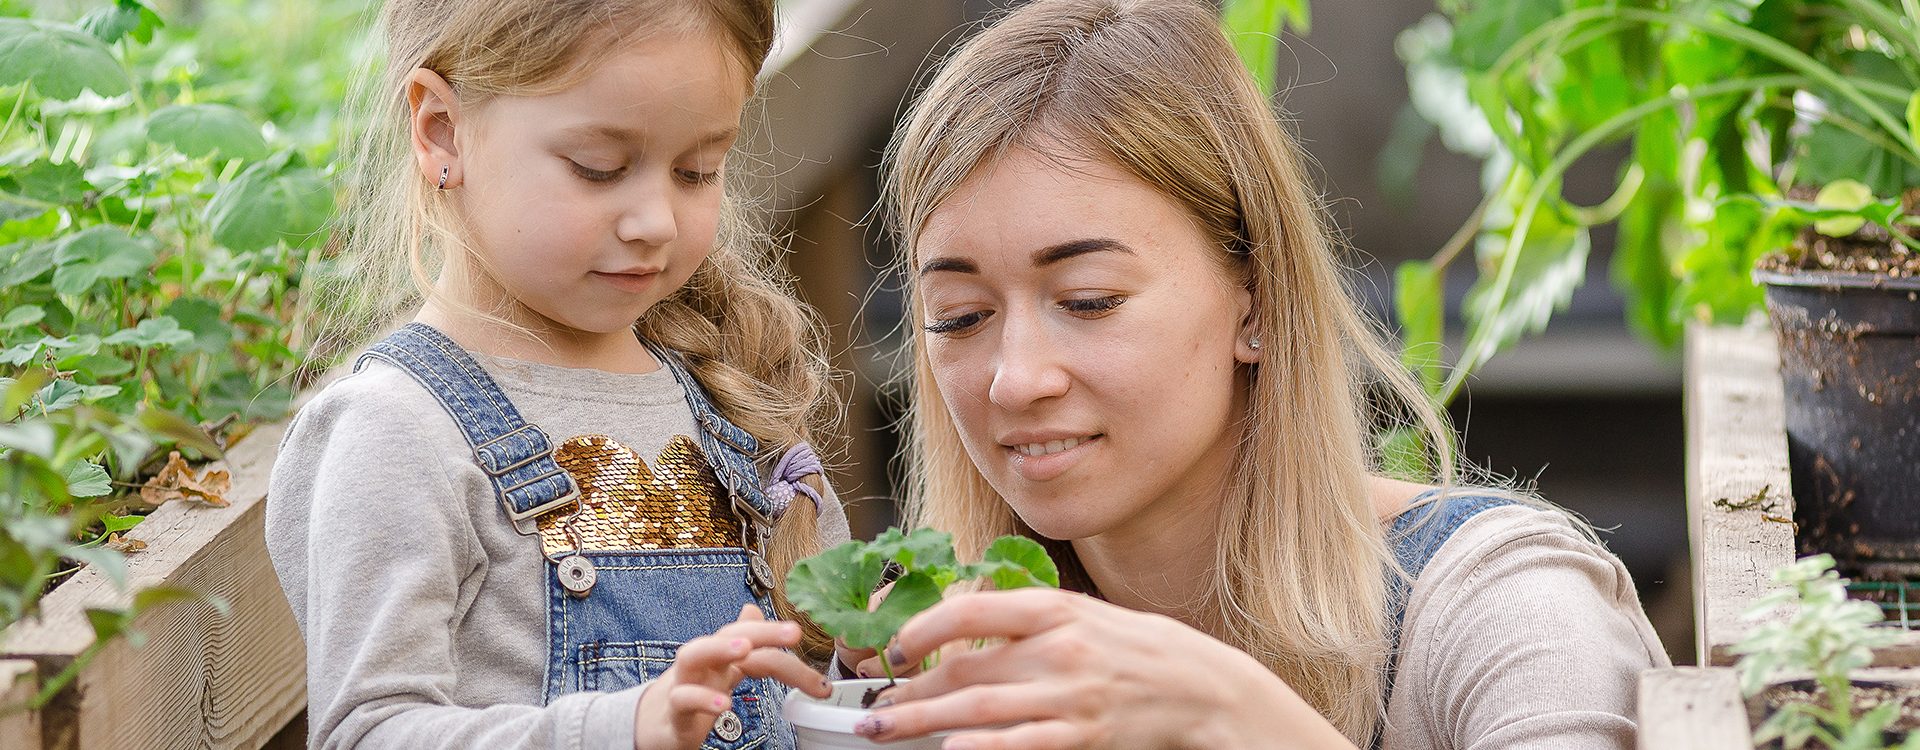 Une-jeune-femme-avec-une-petite-fille-est-en-train-de-planter-une-plante-dans-un-pot